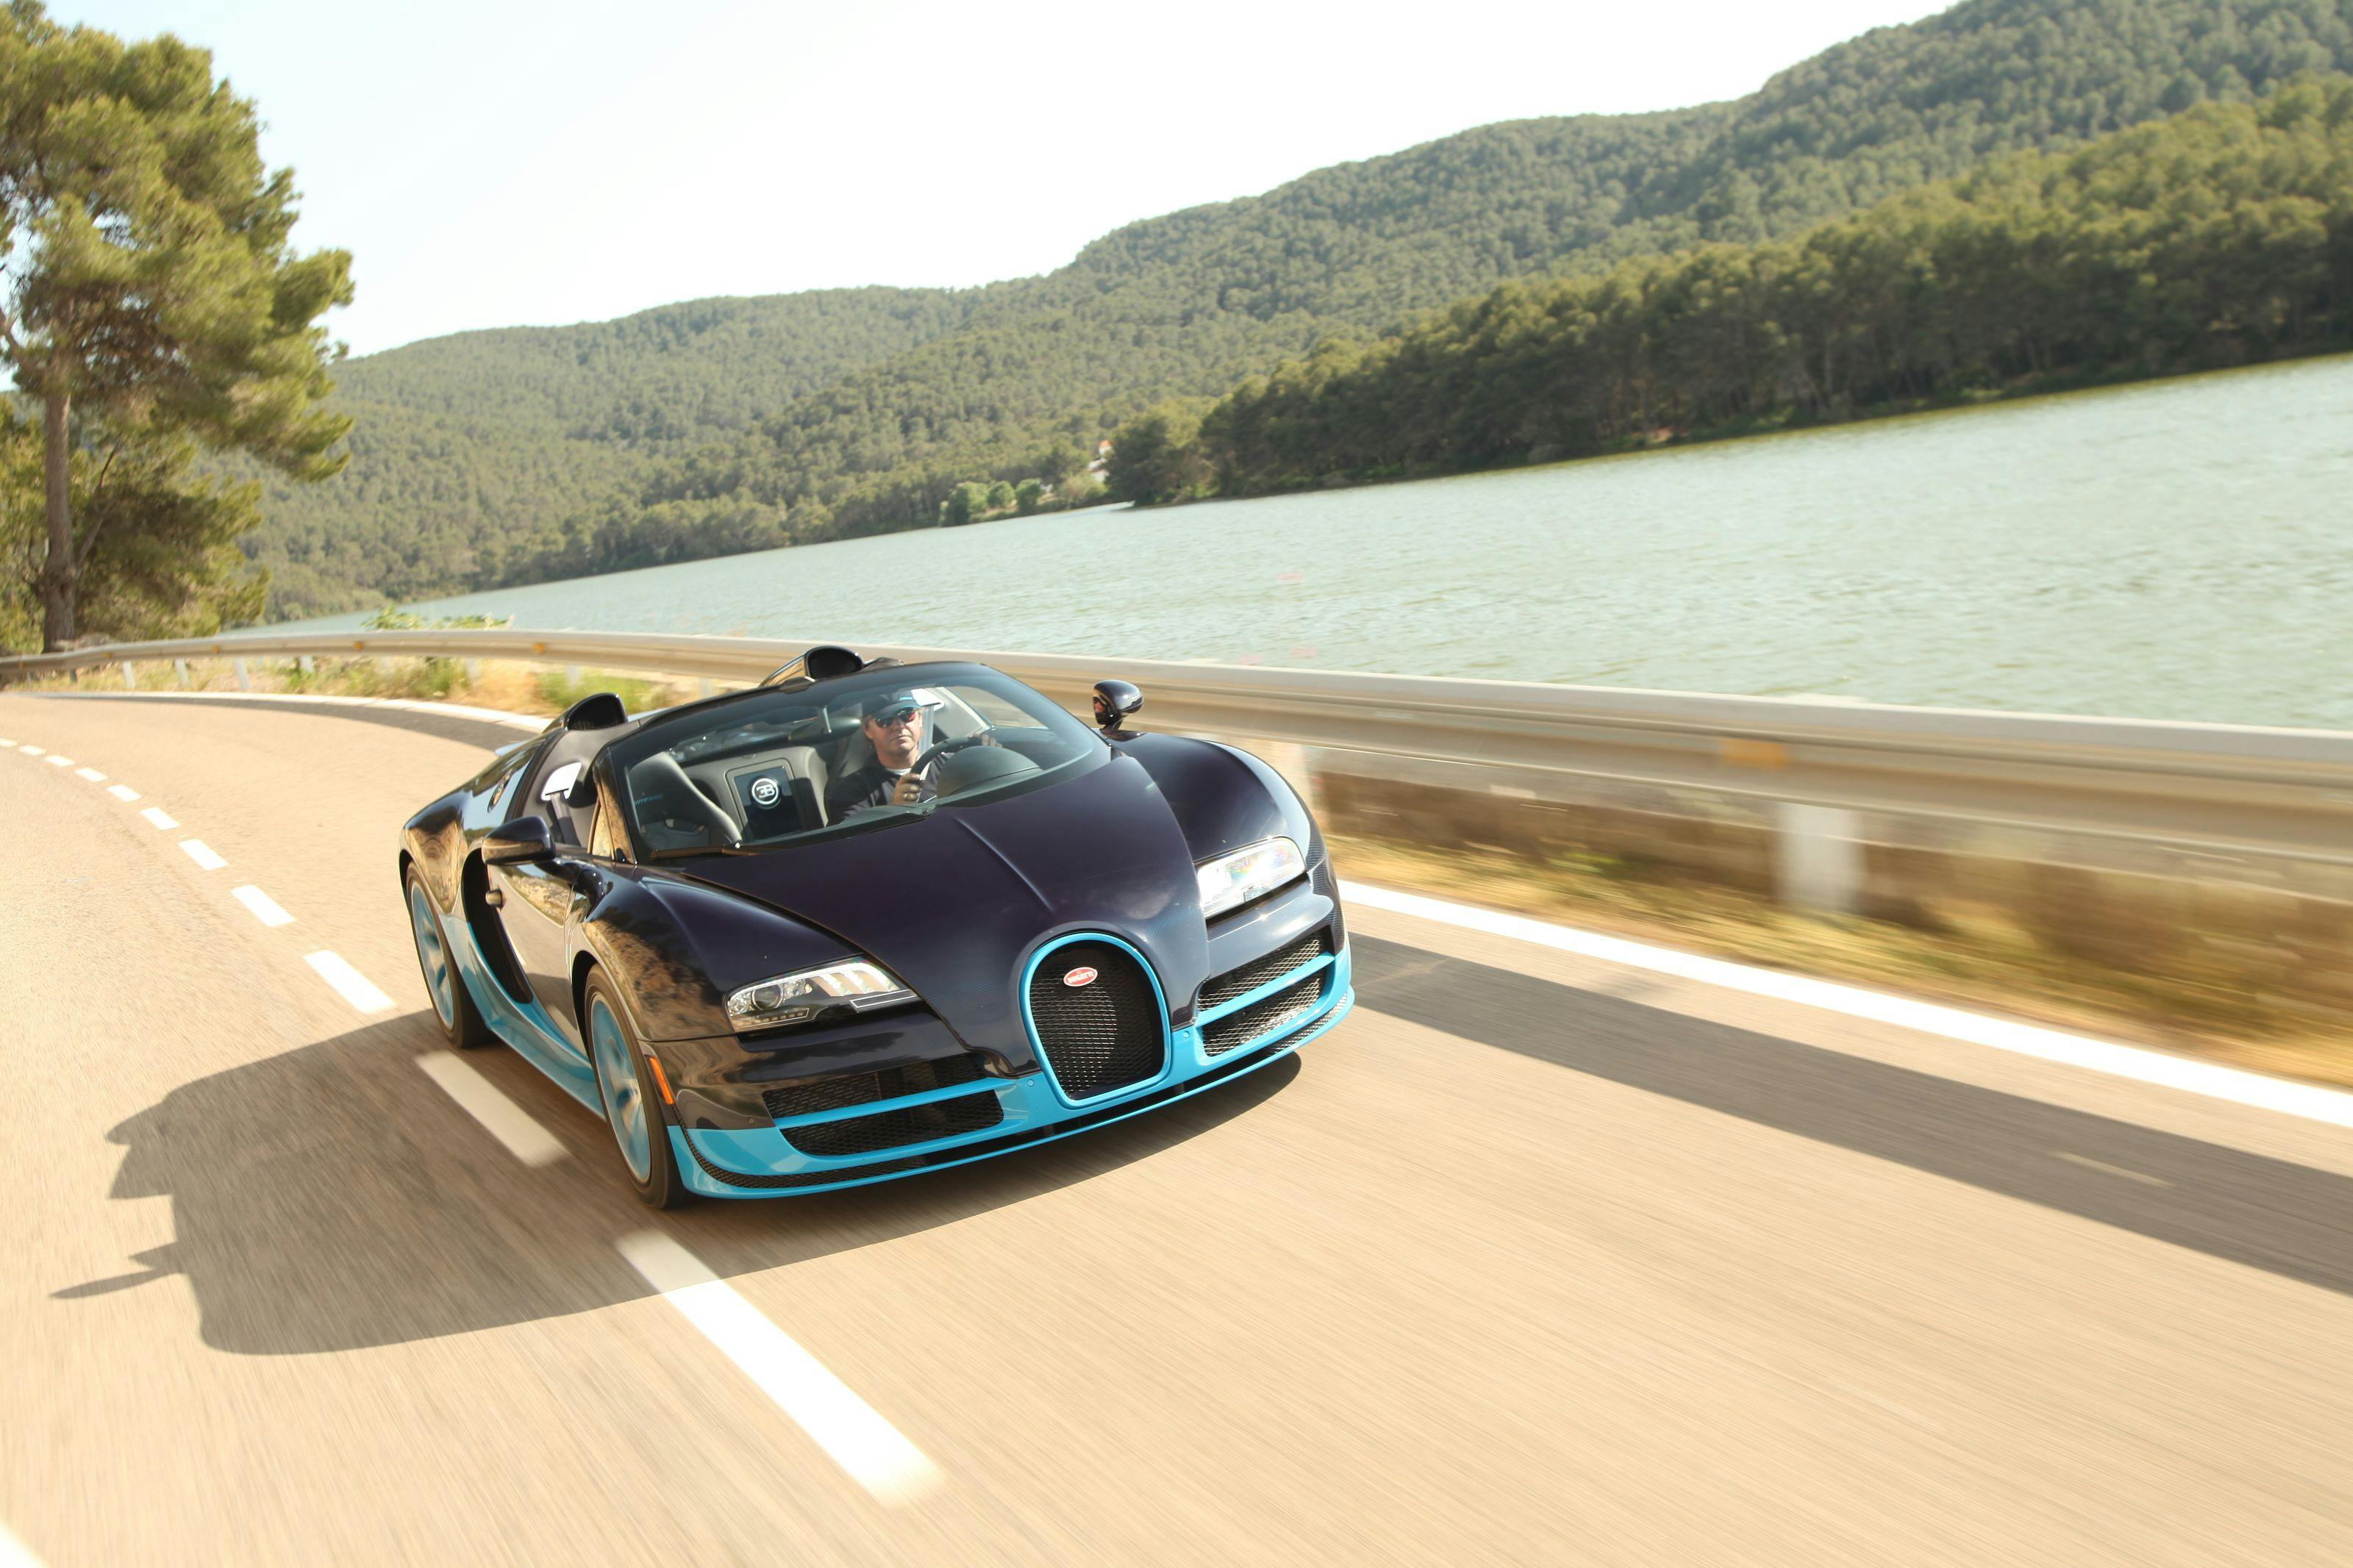 Pressevorstellung des Bugatti Veyron 16.4 Grand Sport Vitesse